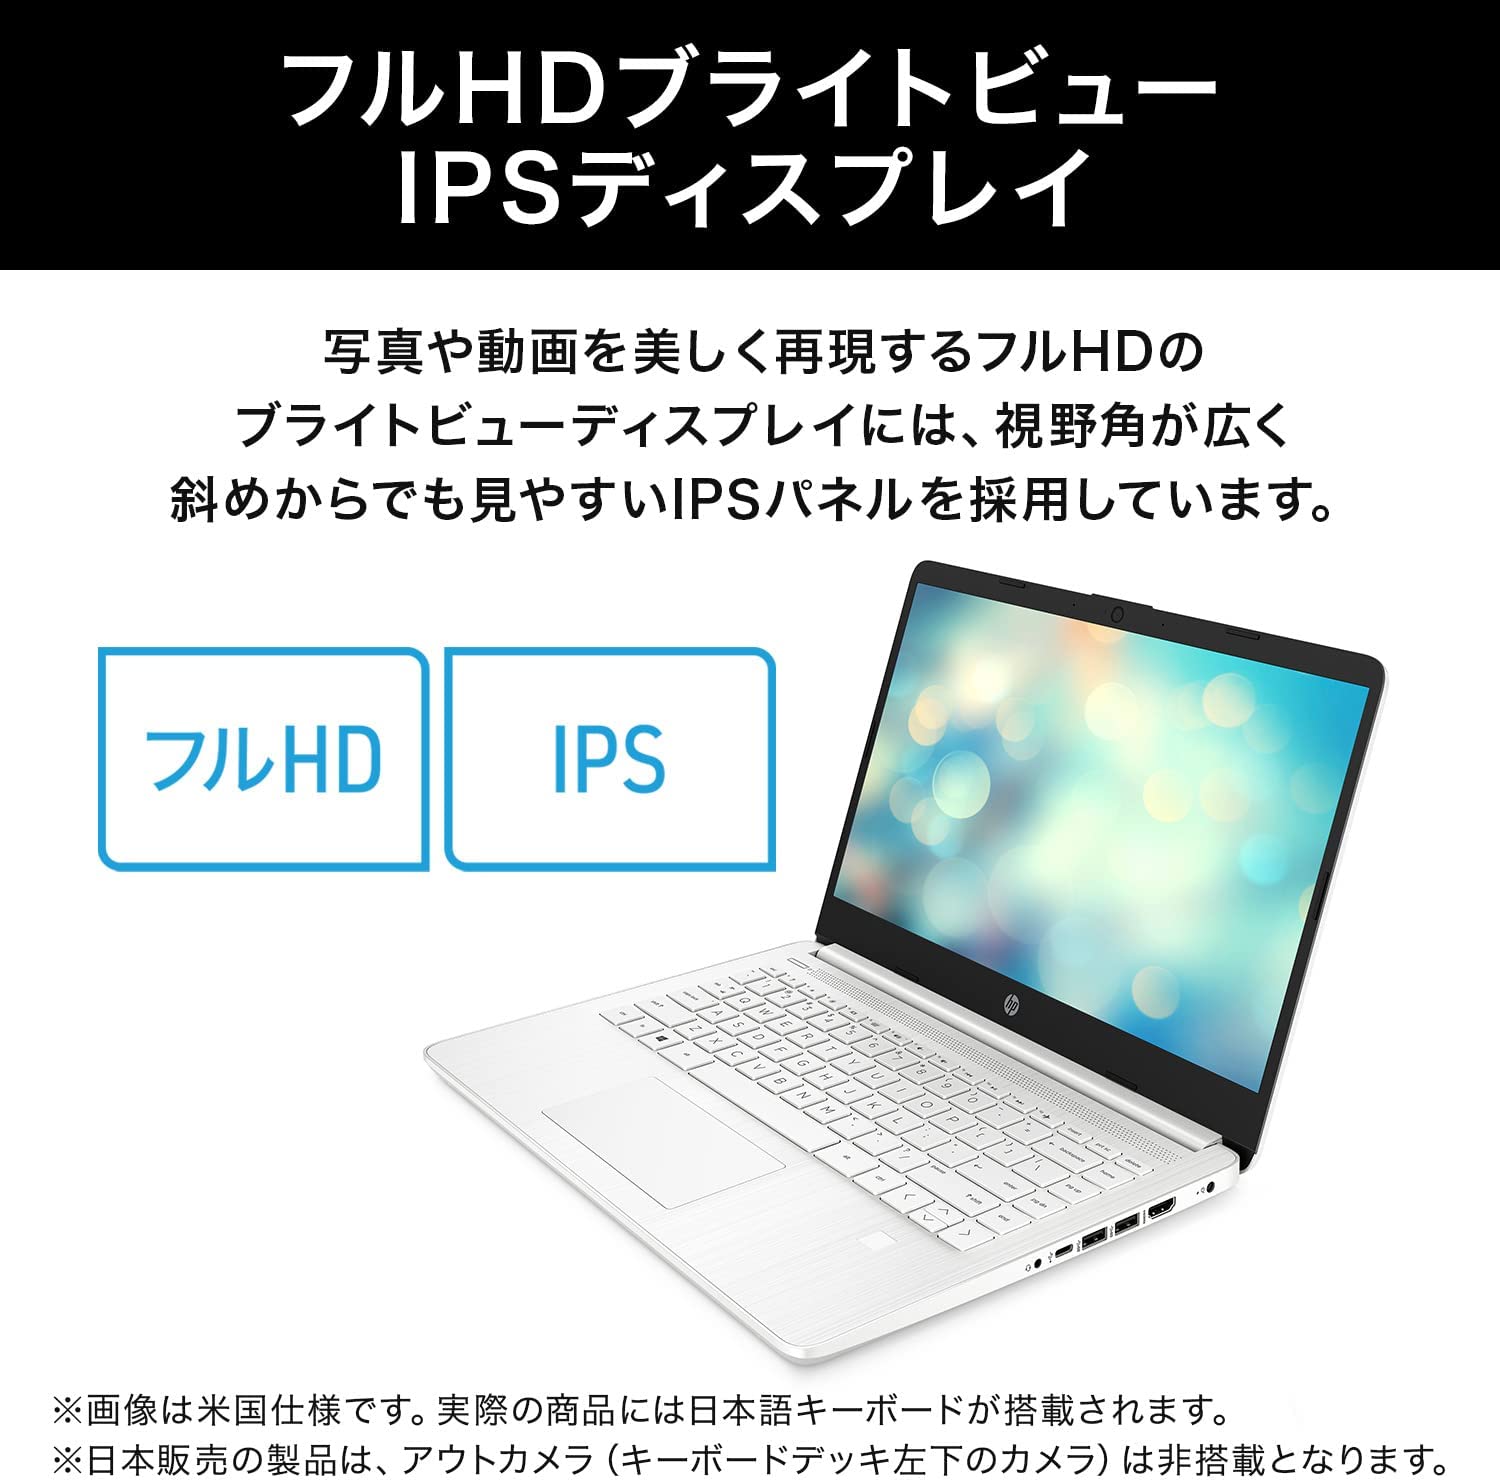 HP ノートパソコン HP 14s-fq0000 14型フルHD AMD 3020e メモリ 4GB